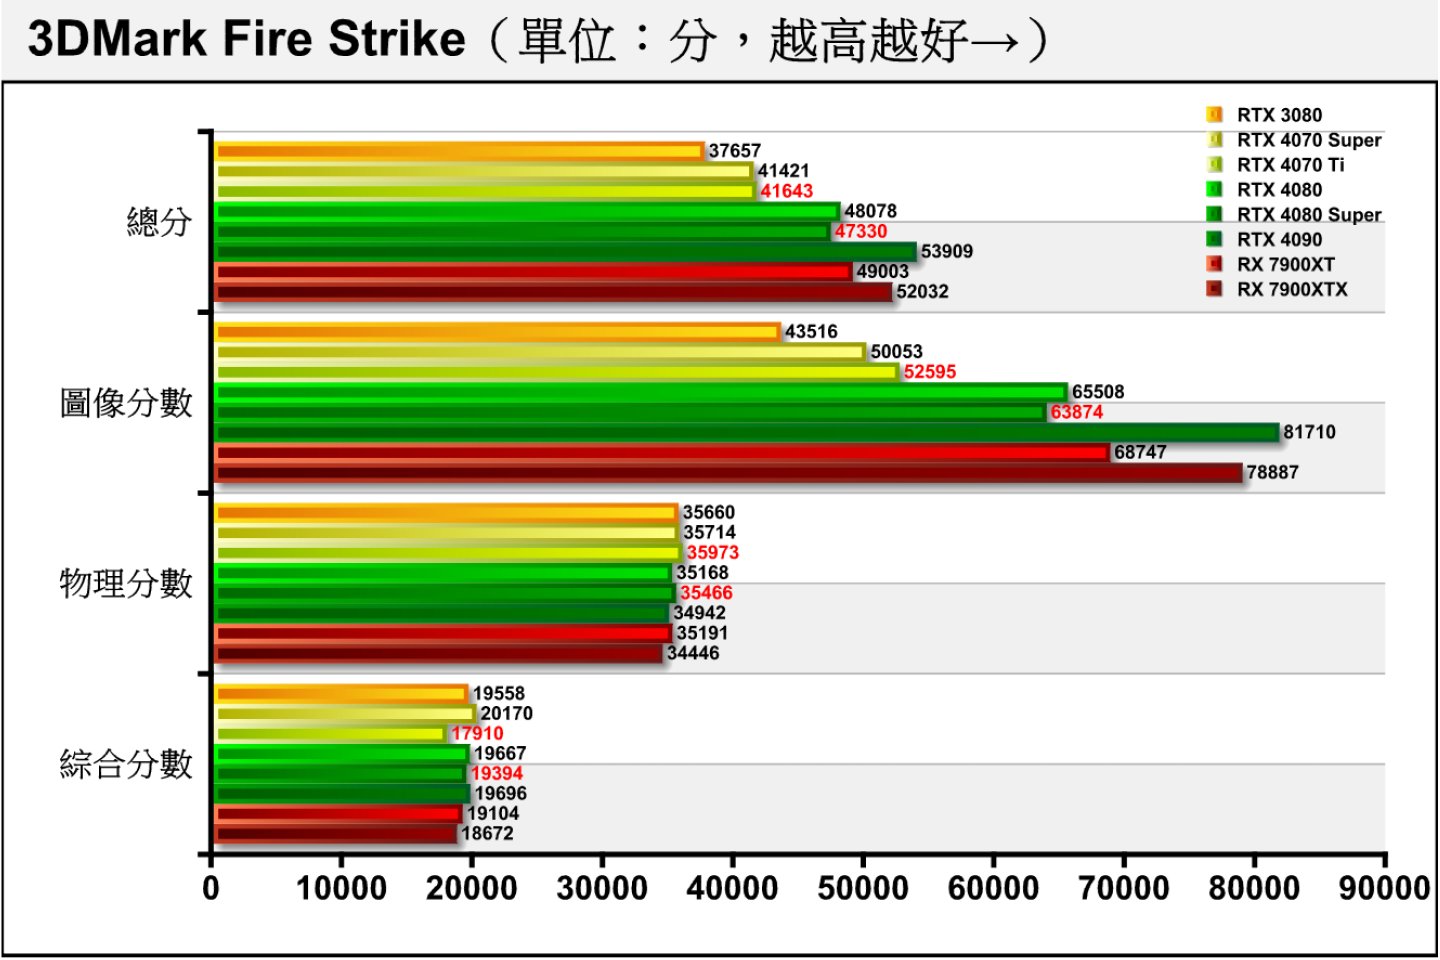 3DMark Fire Strik採用Direct X 11繪圖API配1080p解析度（1920 x 1080），由於各張顯示卡都配一樣的處理器，所以物理分數會相當接近。RTX 4080 Super在圖像分數落後RTX 4080約2.5%，造成總分也有些許落後，但大致落在誤差範圍。